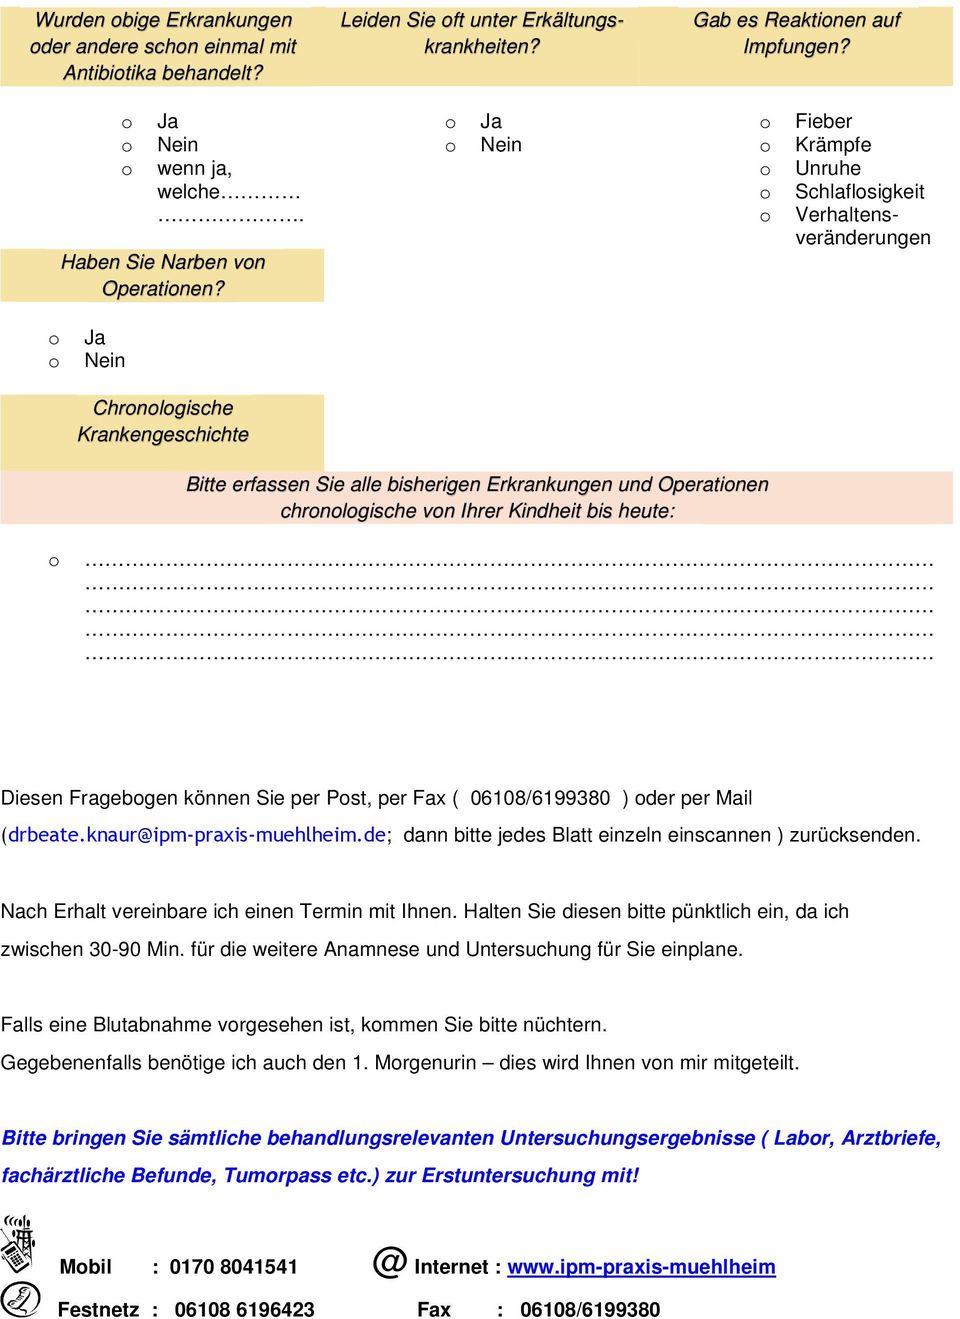 Diesen Fragebgen können Sie per Pst, per Fax ( 06108/6199380 ) der per Mail (drbeate.knaur@ipm-praxis-muehlheim.de; dann bitte jedes Blatt einzeln einscannen ) zurücksenden.